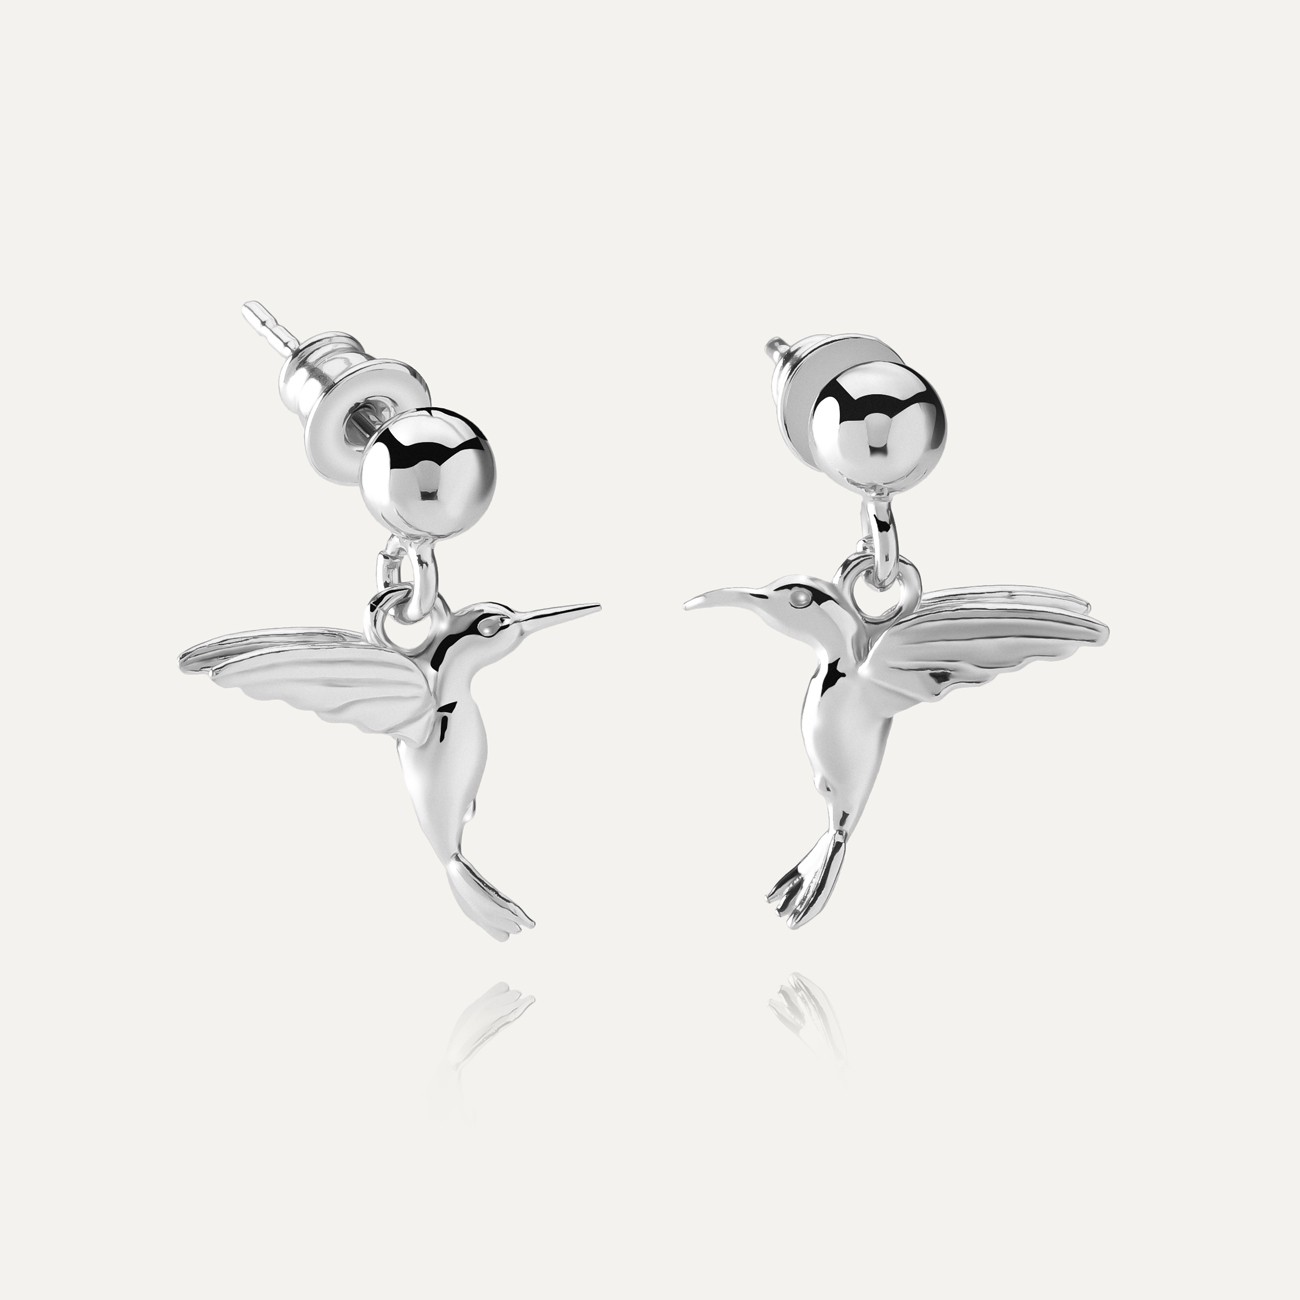 Star drop earrings T°ra'vel'' , silver 925